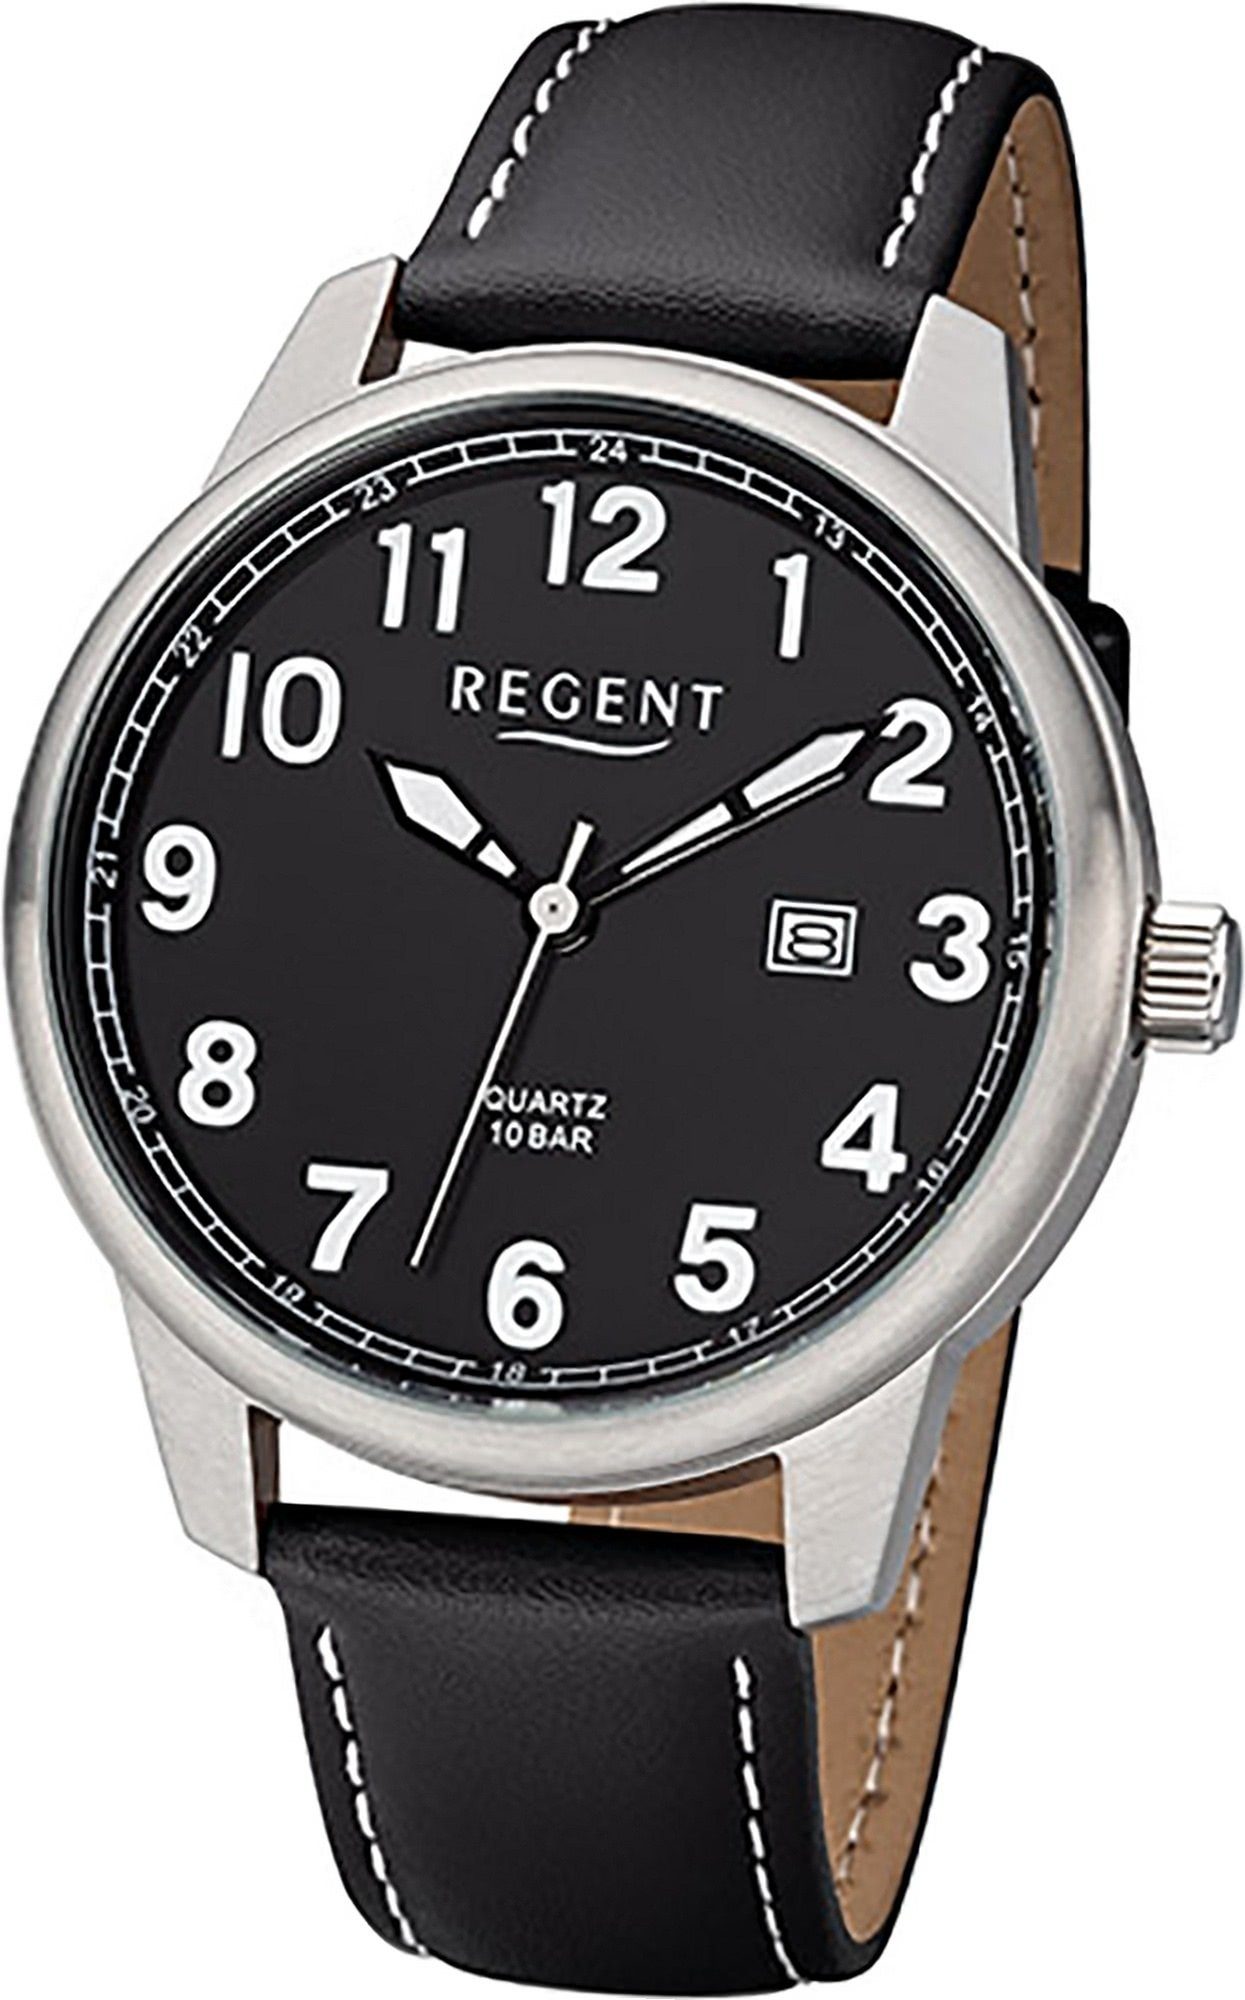 Regent Quarzuhr Regent Leder (ca. Uhr Herrenuhr groß schwarz, Gehäuse, rundes 41mm) Lederarmband Herren F-1238 Analog